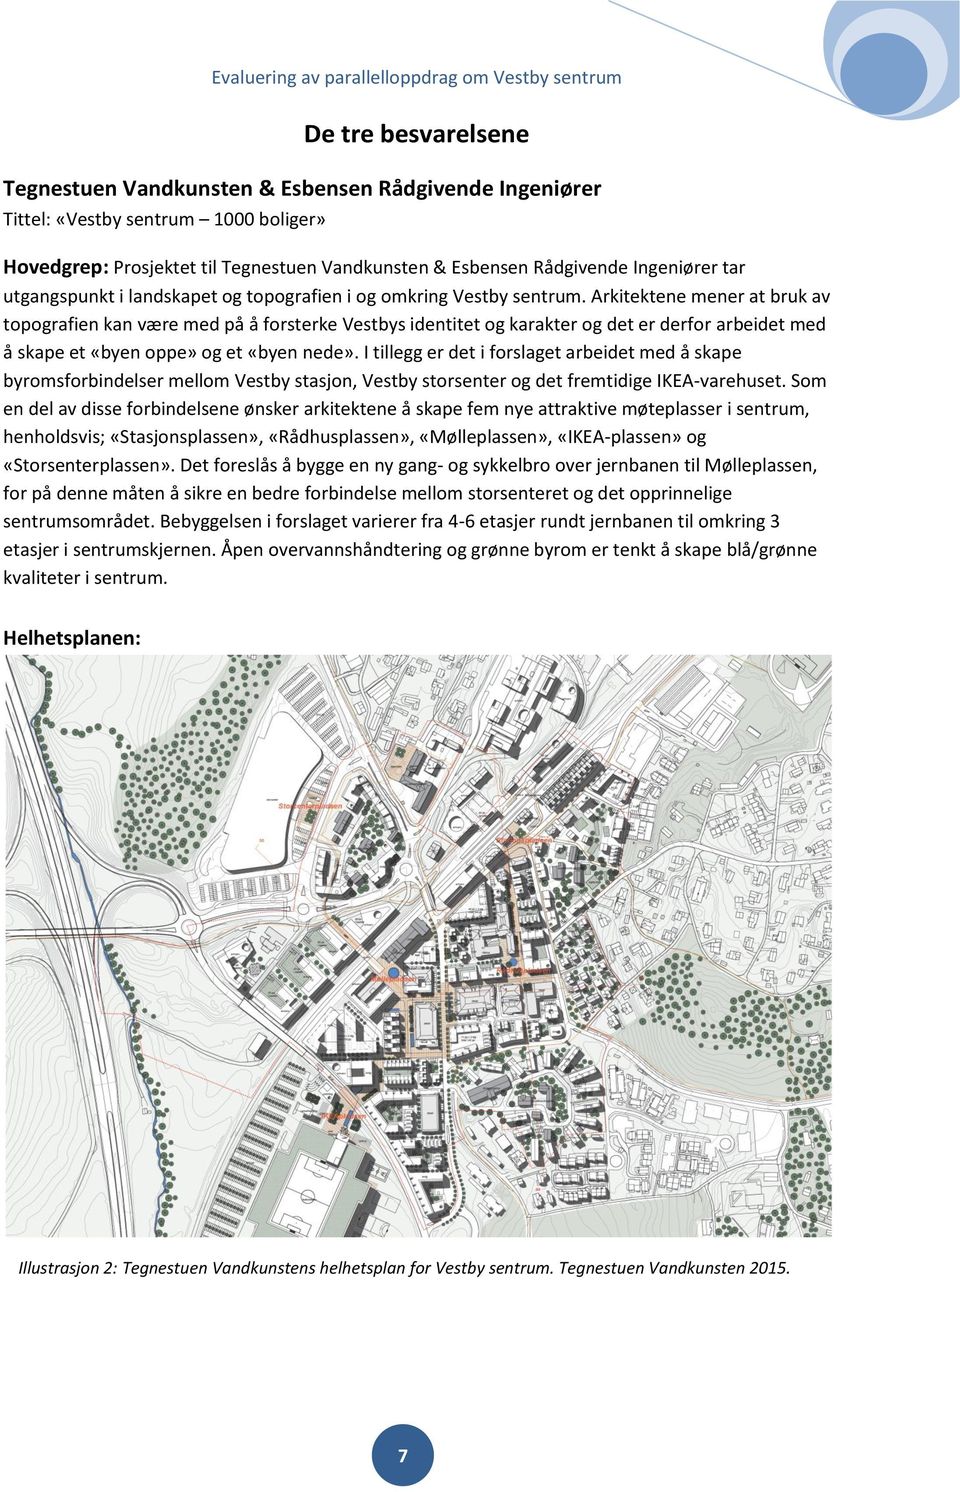 Arkitektene mener at bruk av topografien kan være med på å forsterke Vestbys identitet og karakter og det er derfor arbeidet med å skape et «byen oppe» og et «byen nede».